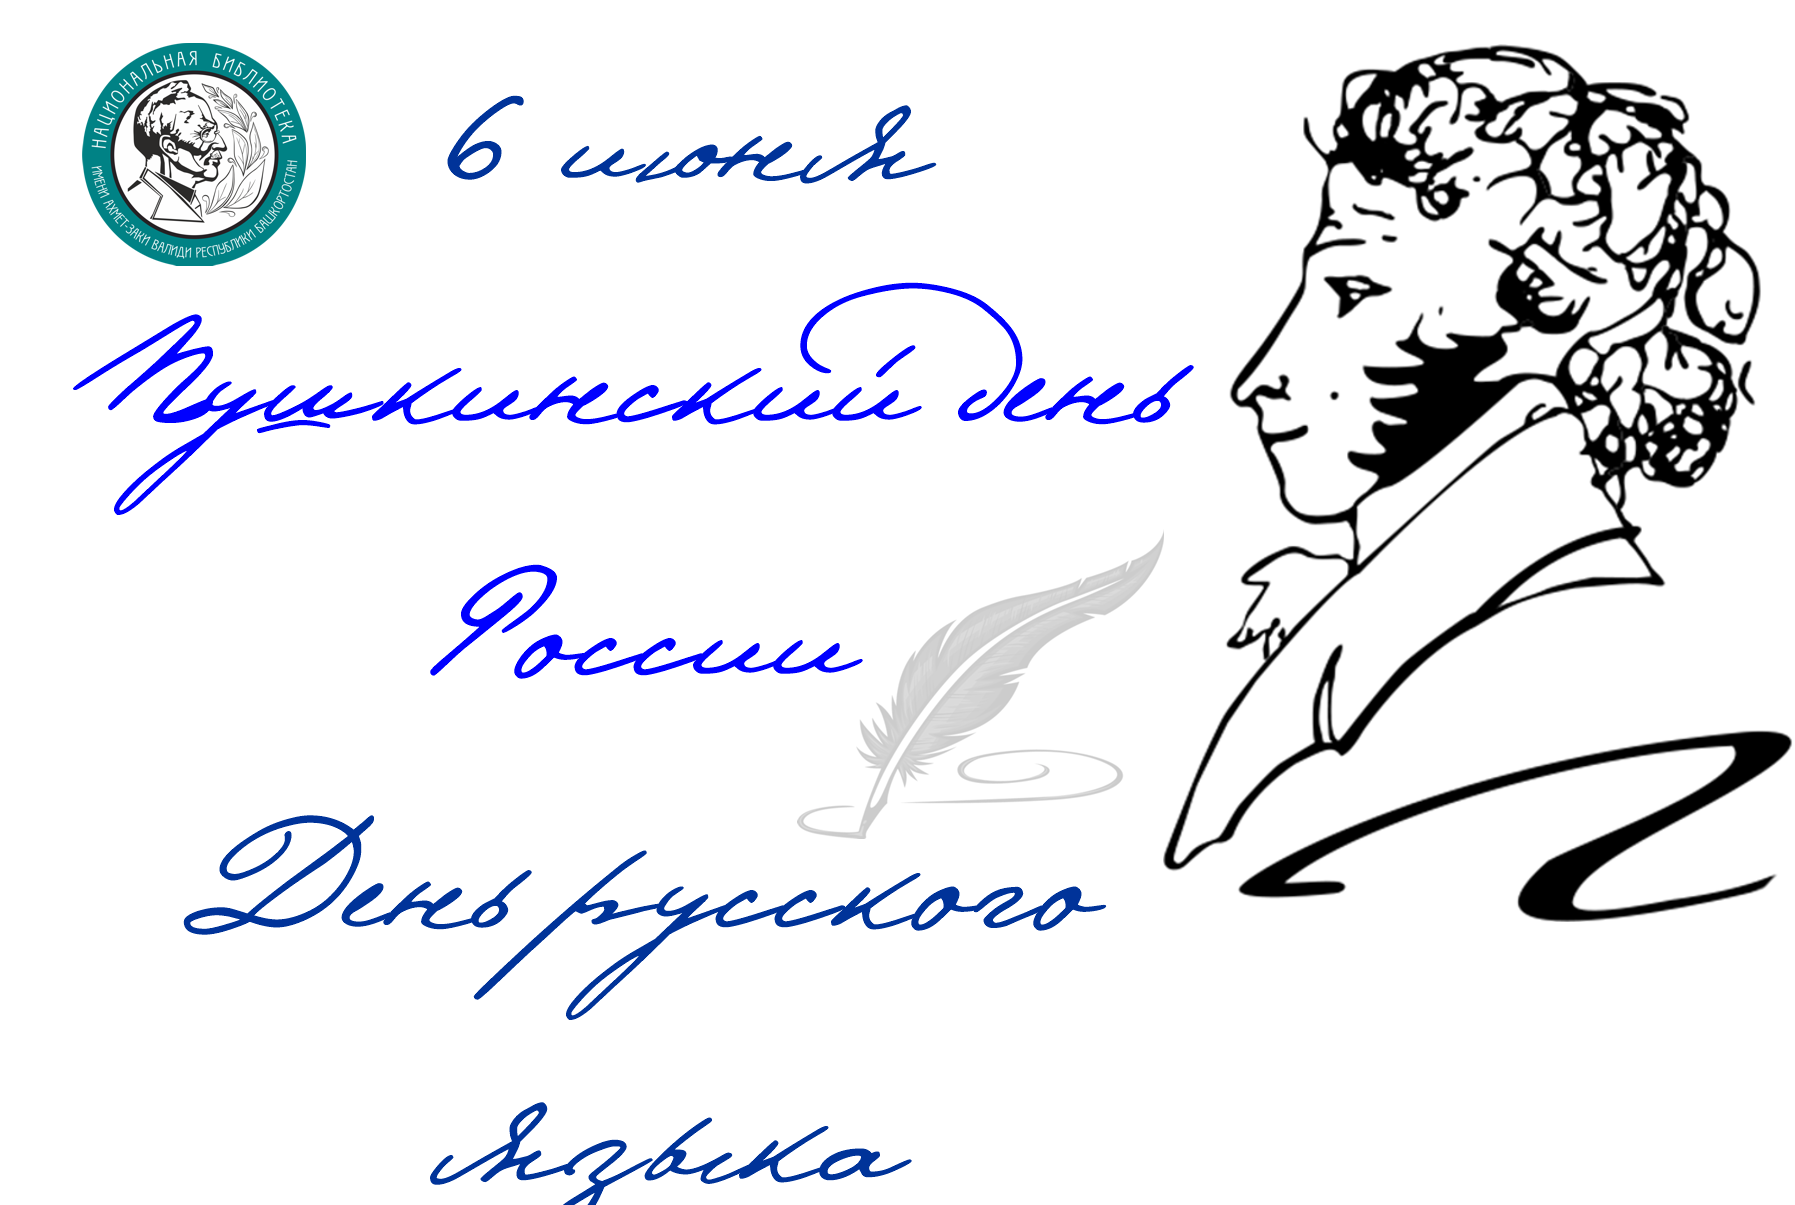 Пушкинский день - день русского языка старинные открытки